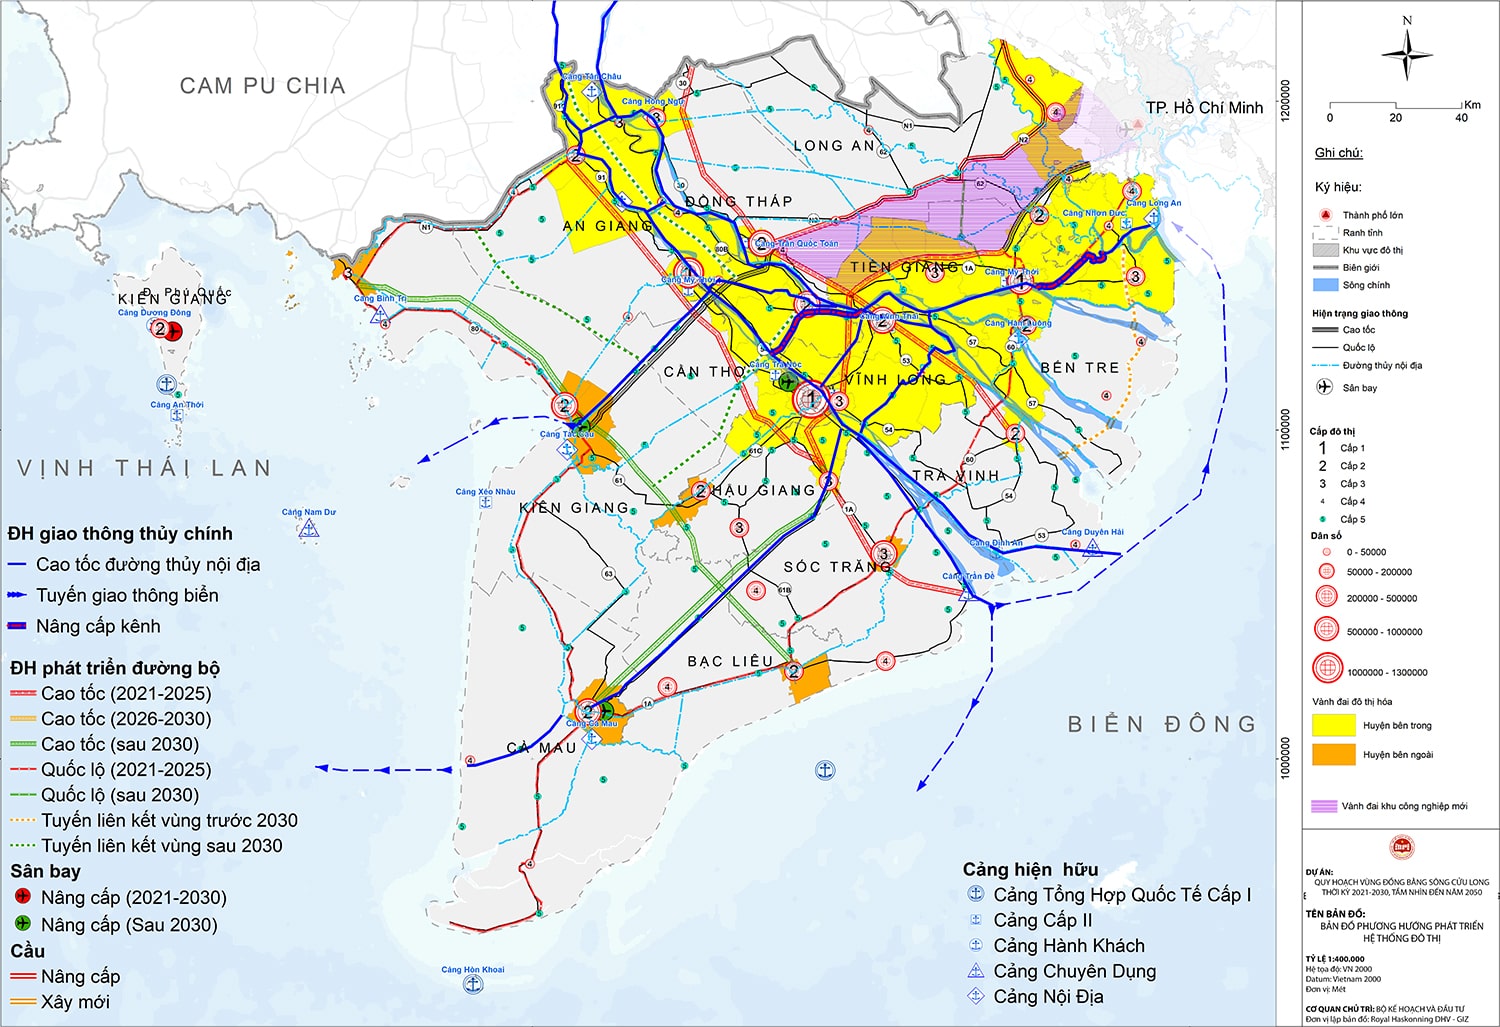 Quy hoạch vùng Đồng Bằng Sông Cửu Long thời kỳ 2021 - 2030, tầm nhìn đến năm 2050